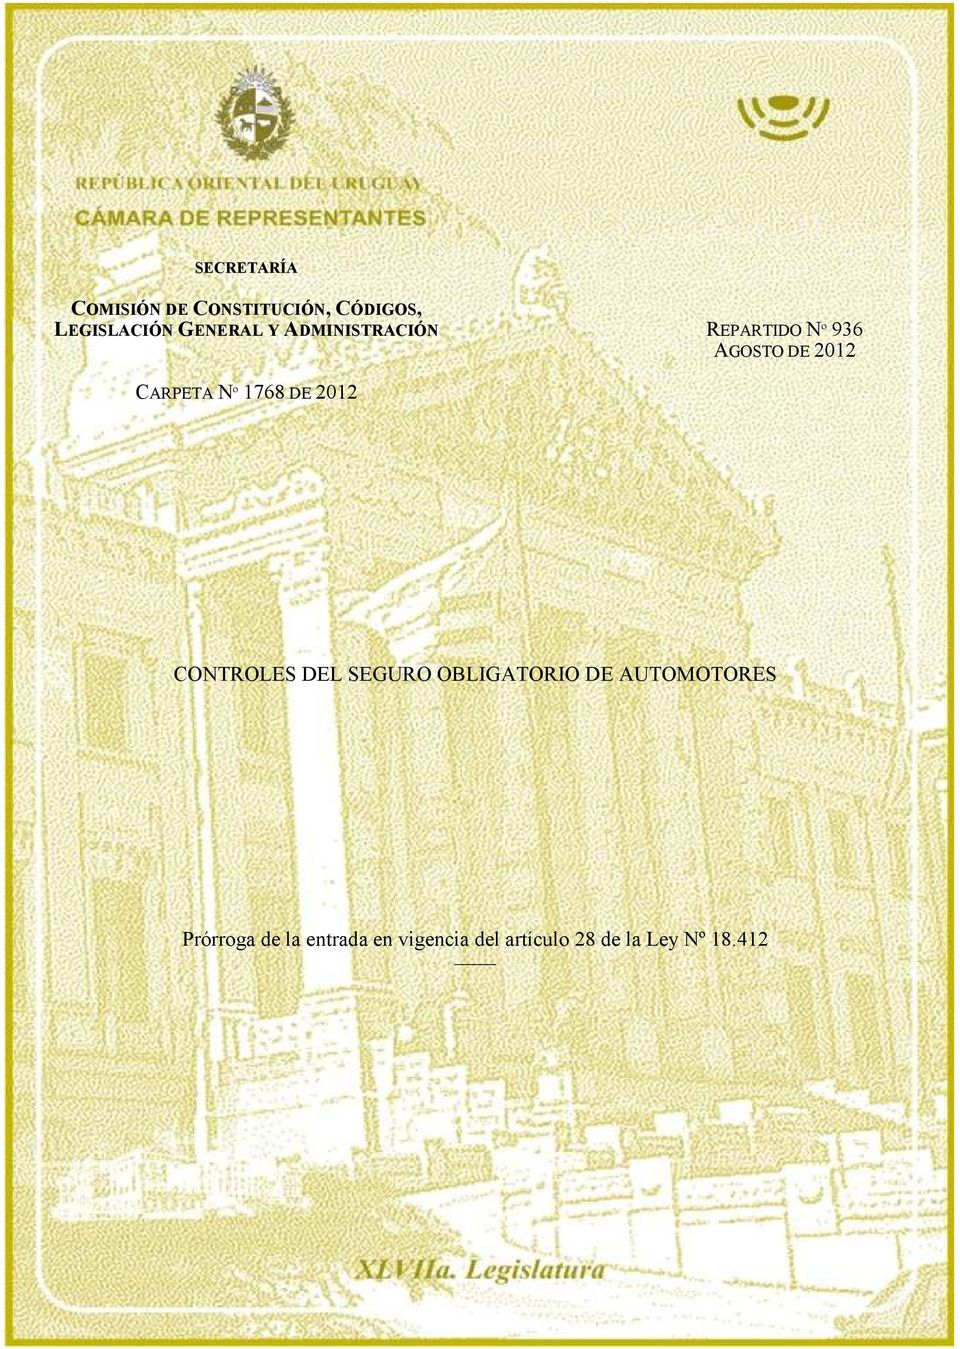 Nº 1768 DE 2012 CONTROLES DEL SEGURO OBLIGATORIO DE AUTOMOTORES